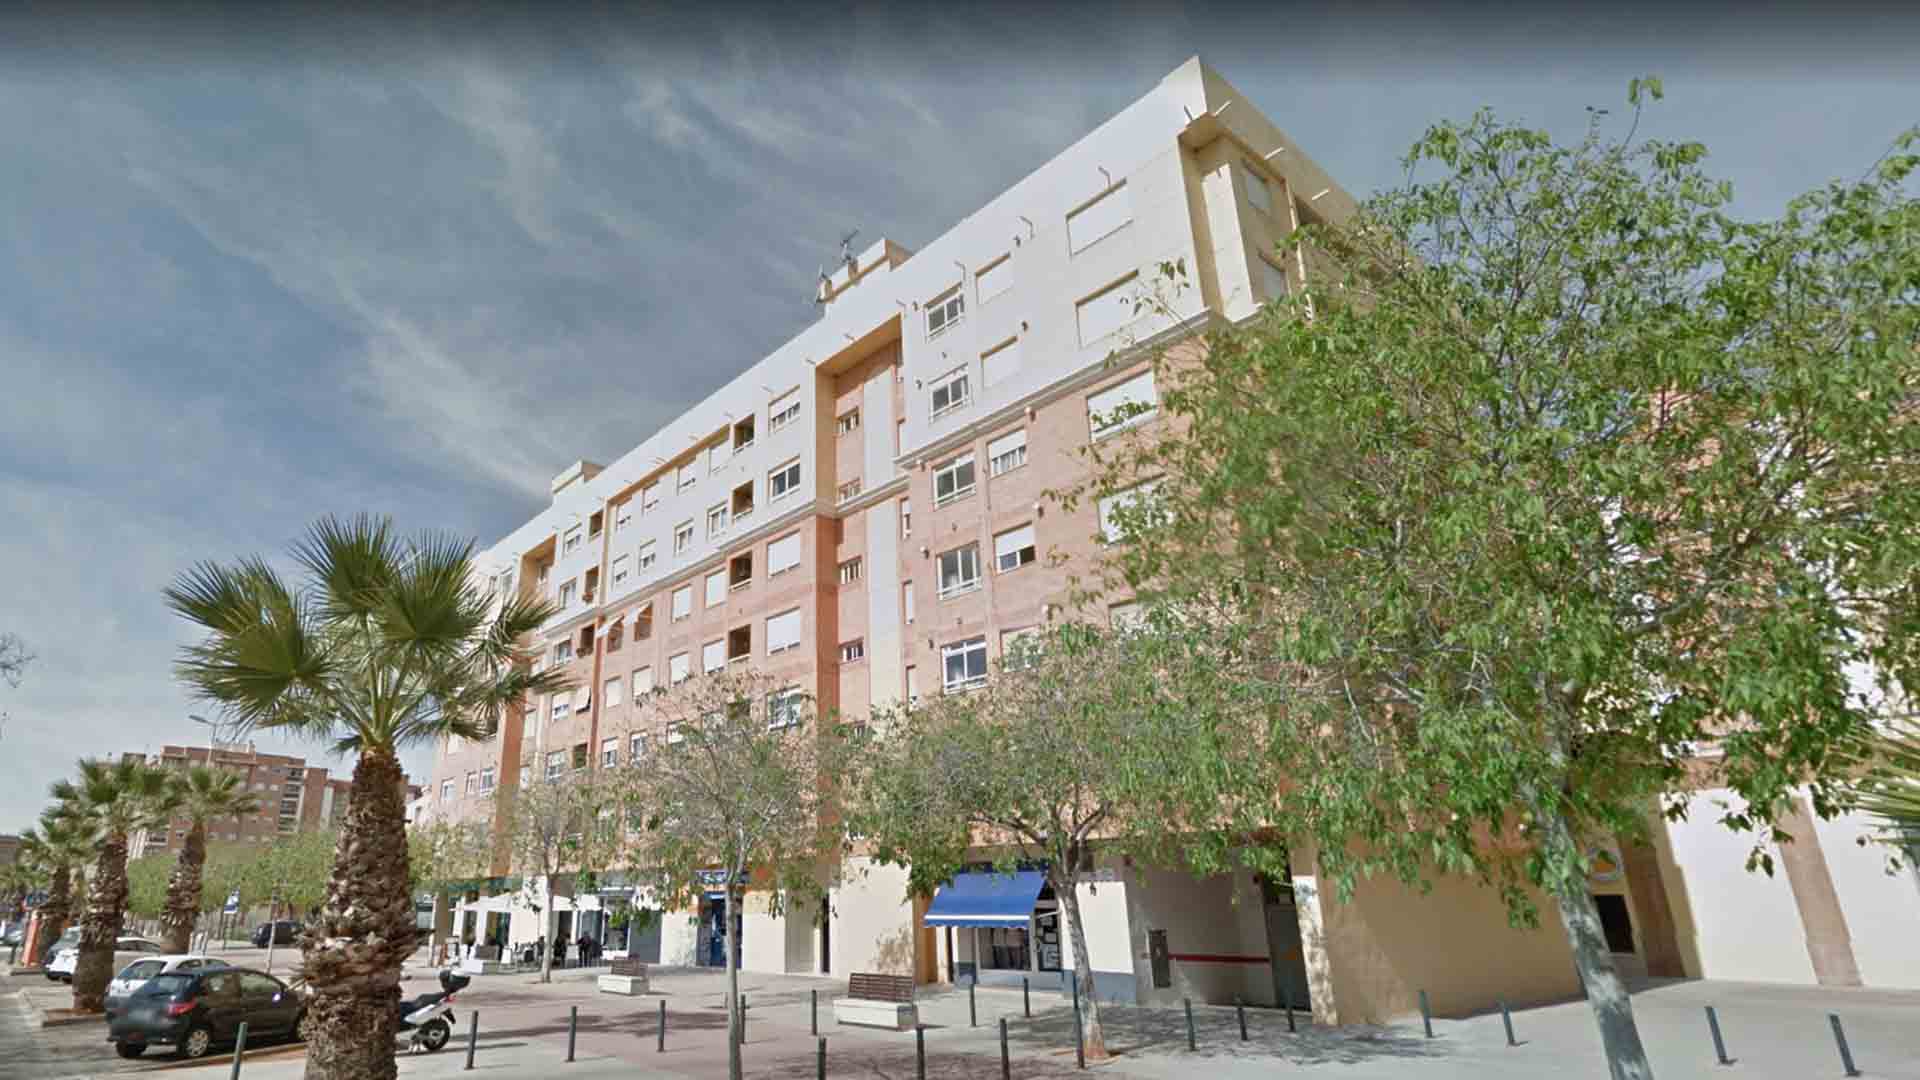 Un hombre mata a sus dos hijas en Castellón y luego se suicida